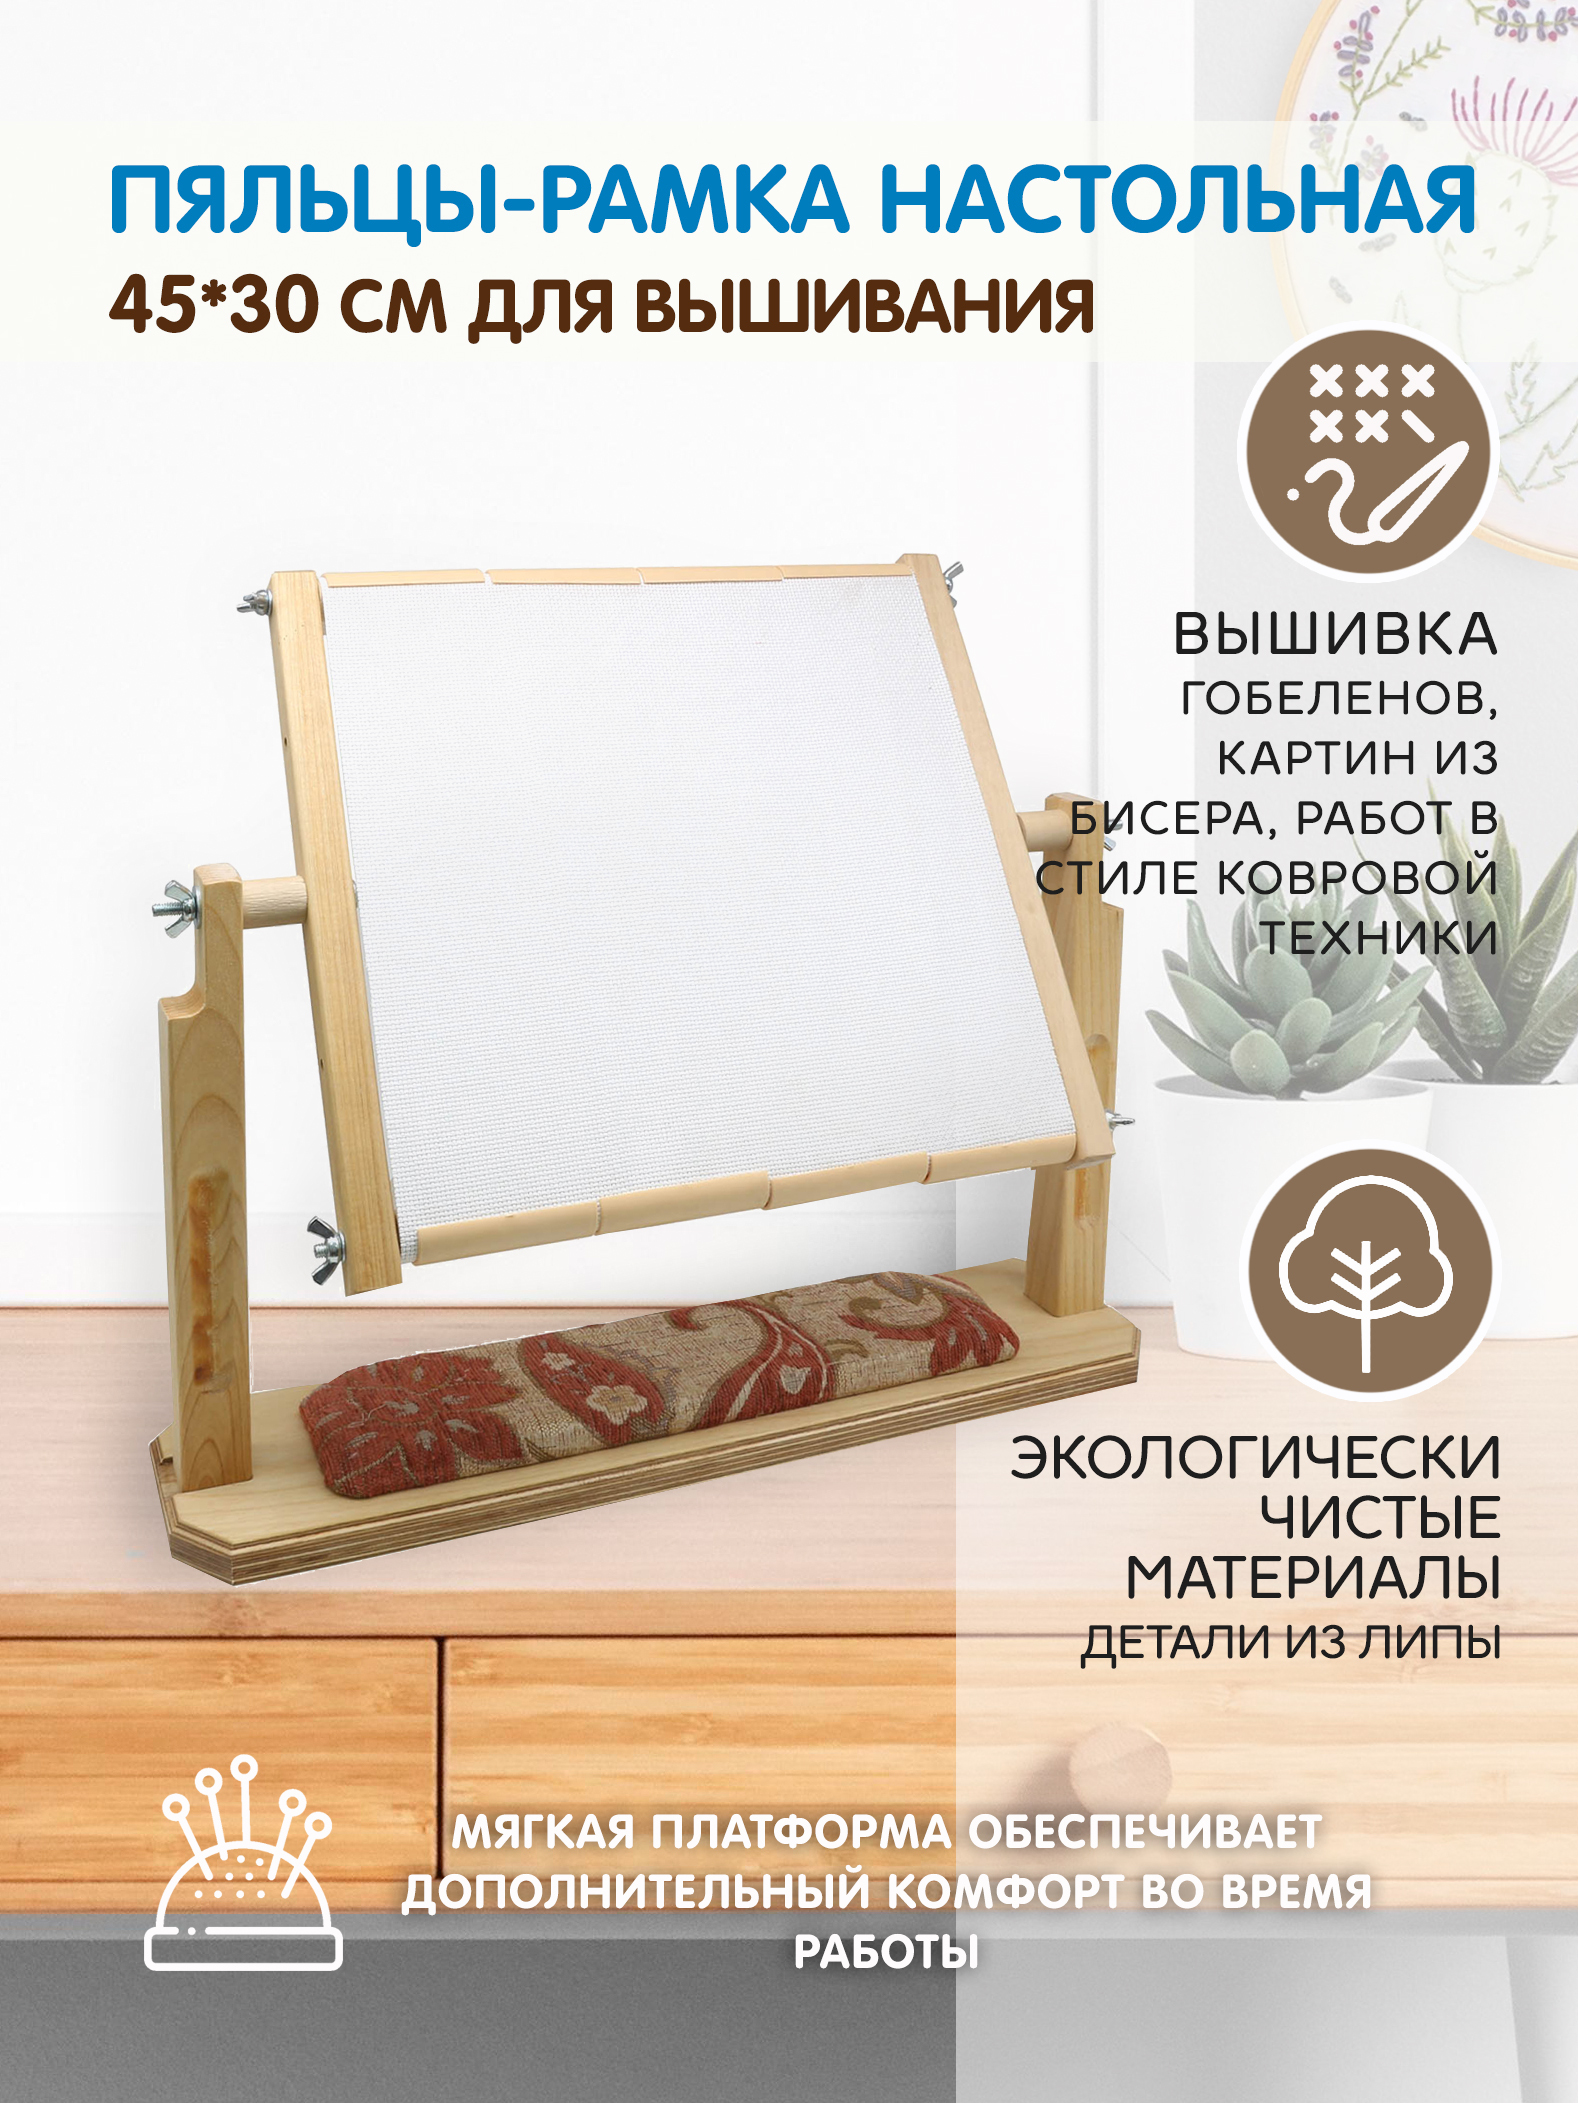 Станок для вышивания - Купить станки для вышивания в интернет-магазине - Mnogonitok